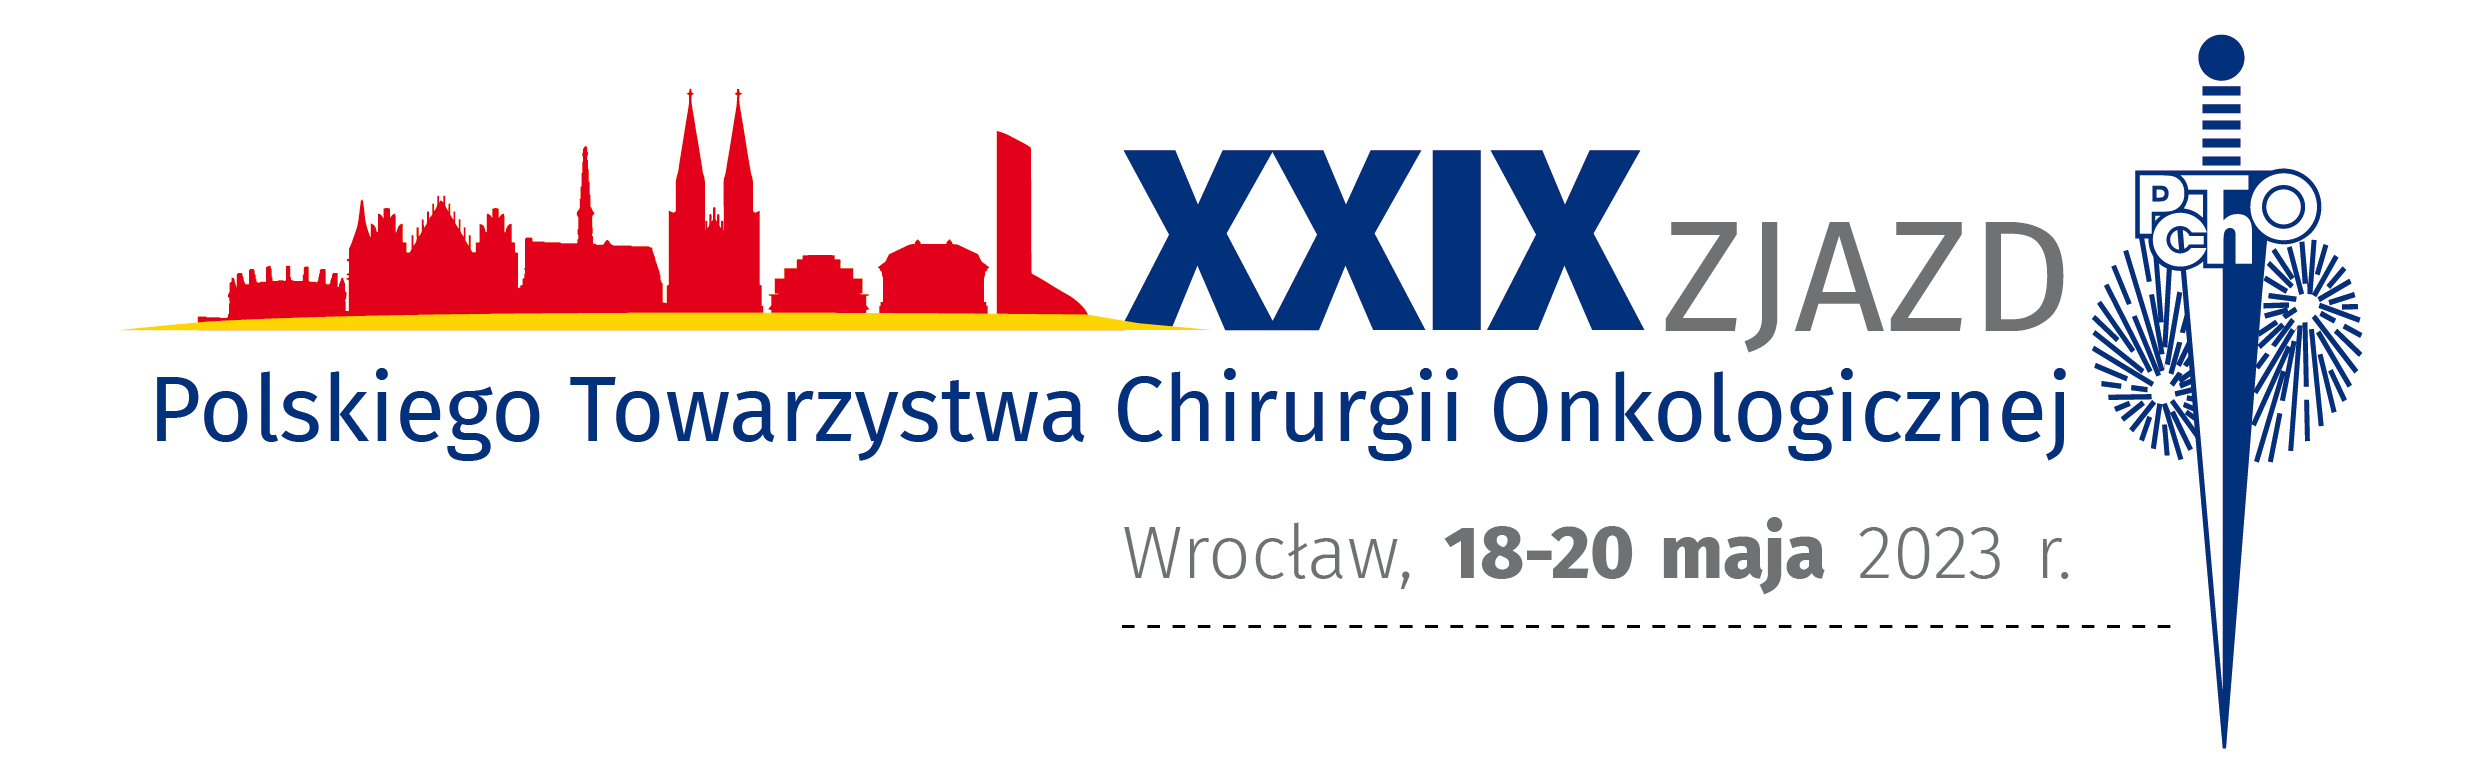 XXIX Zjazd Polskiego Towarzystwa Chirurgii Onkologicznej XL Konferencja Naukowo-Szkoleniowa PTChO